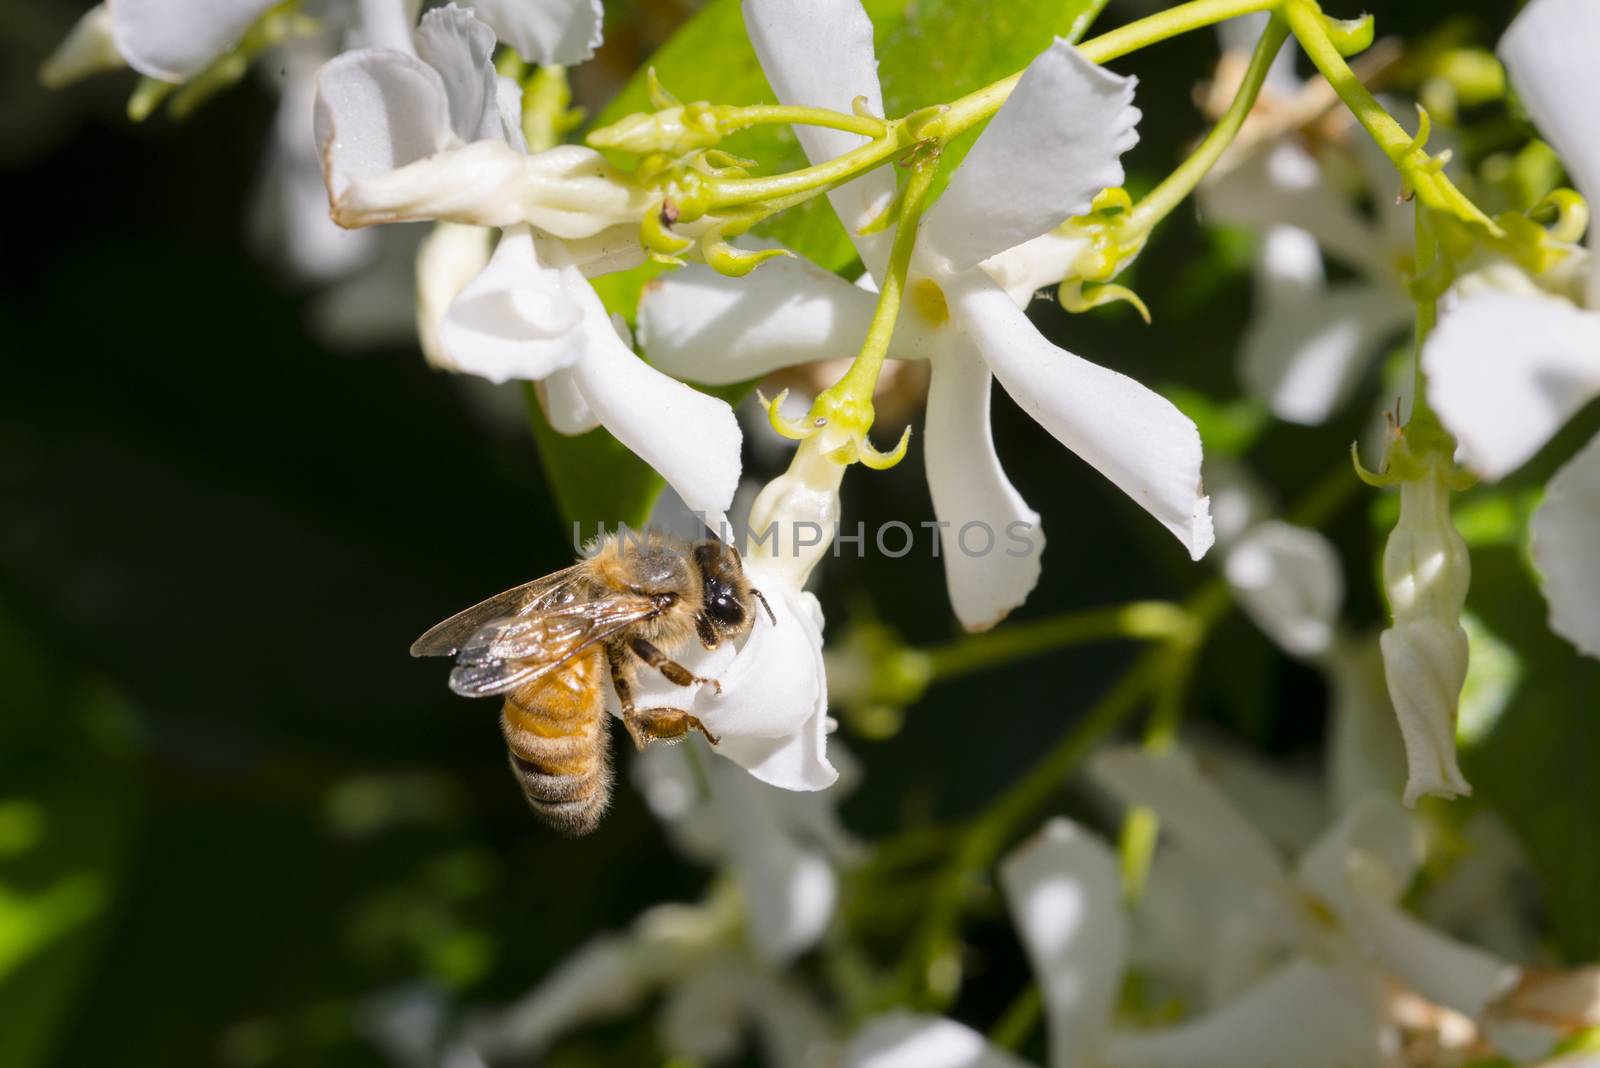 Western honey bee or European honey bee (Apis mellifera) on flow by Njean